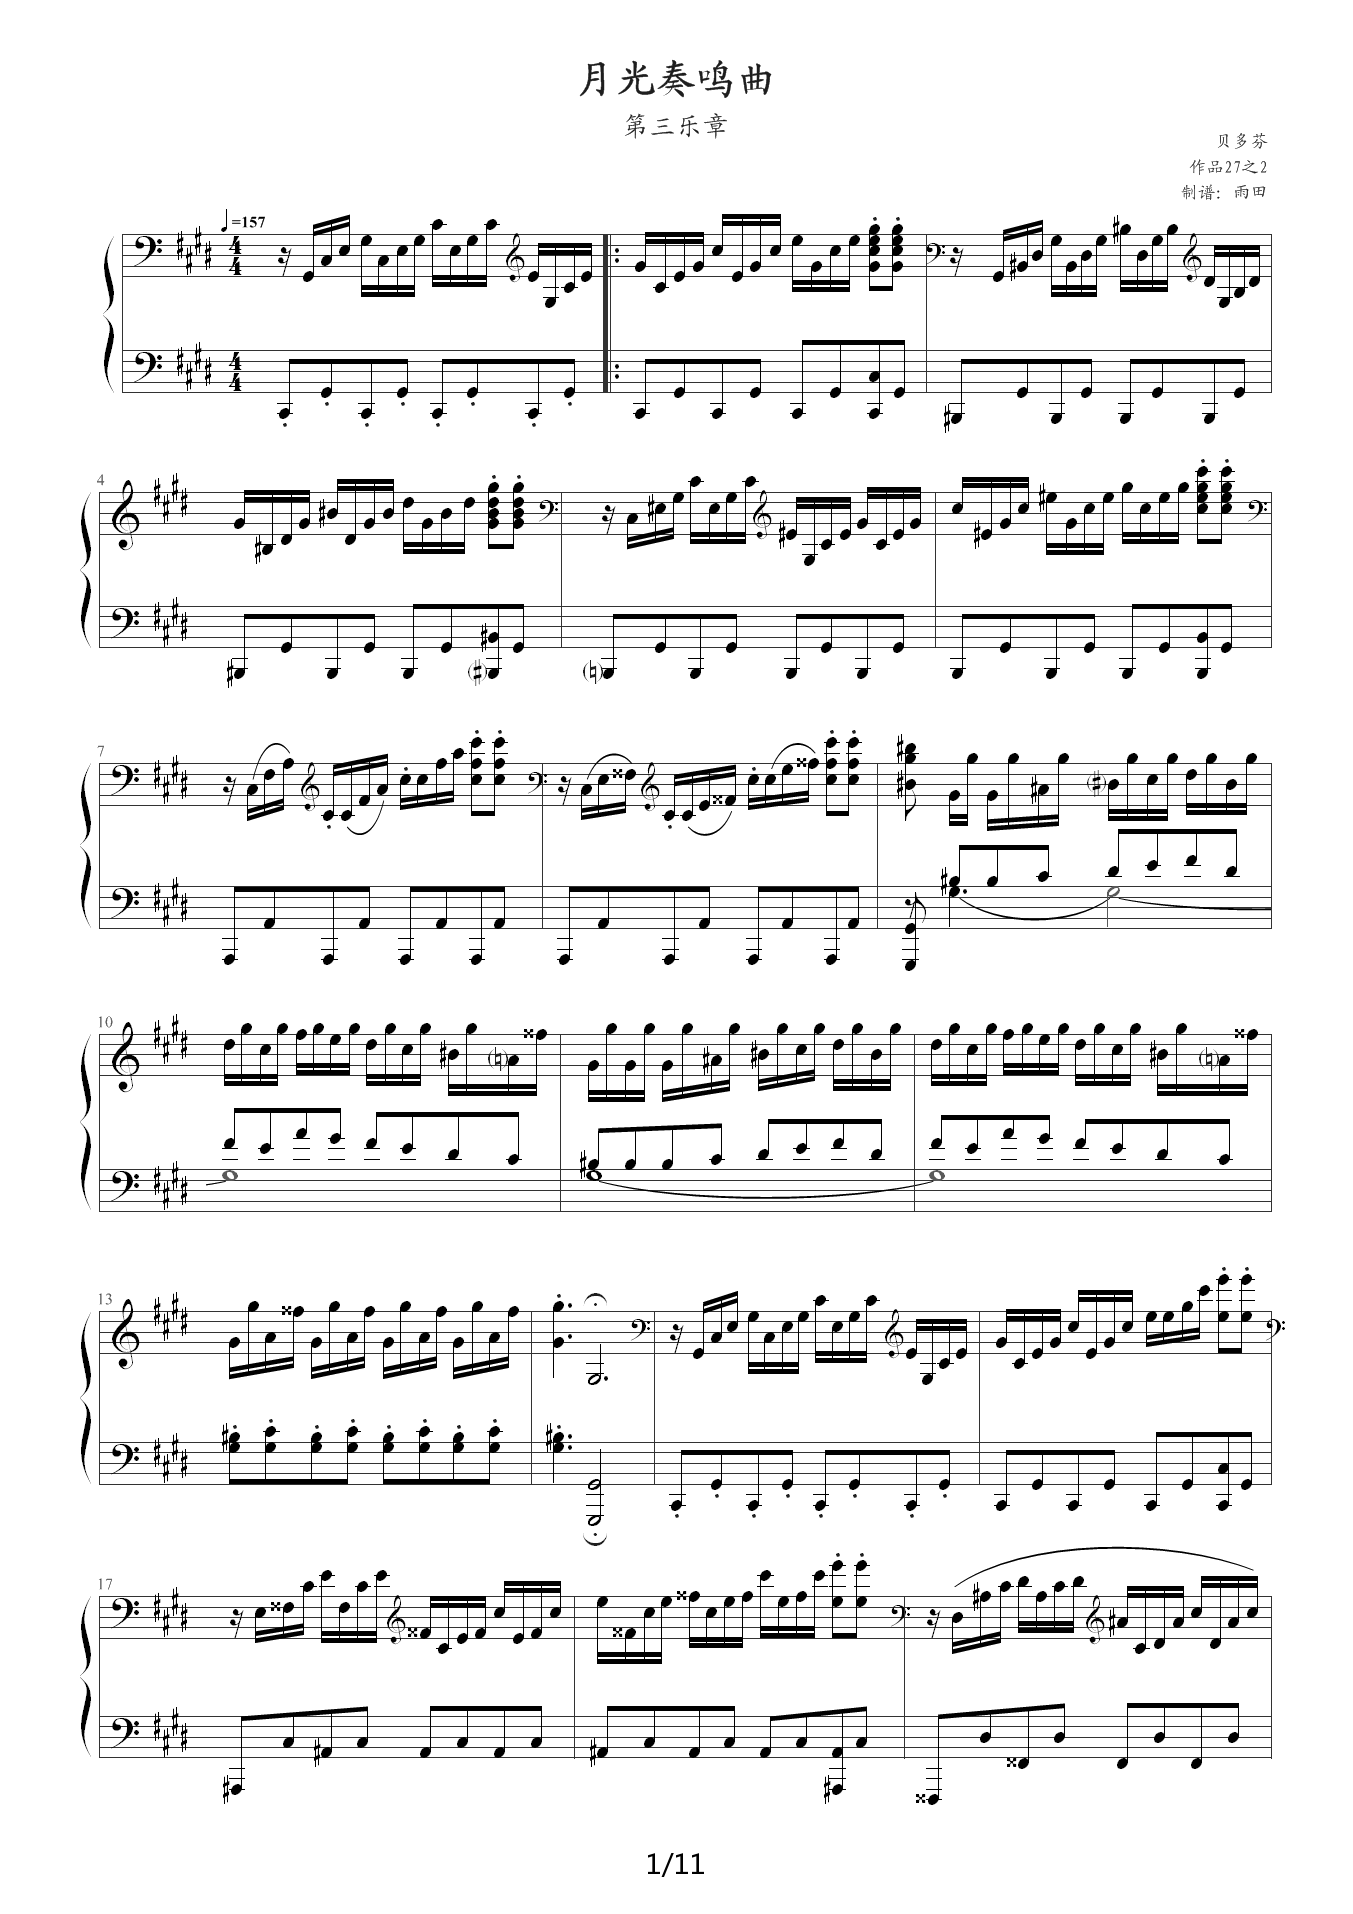 月光第三乐章钢琴谱-贝多芬-琴艺谱